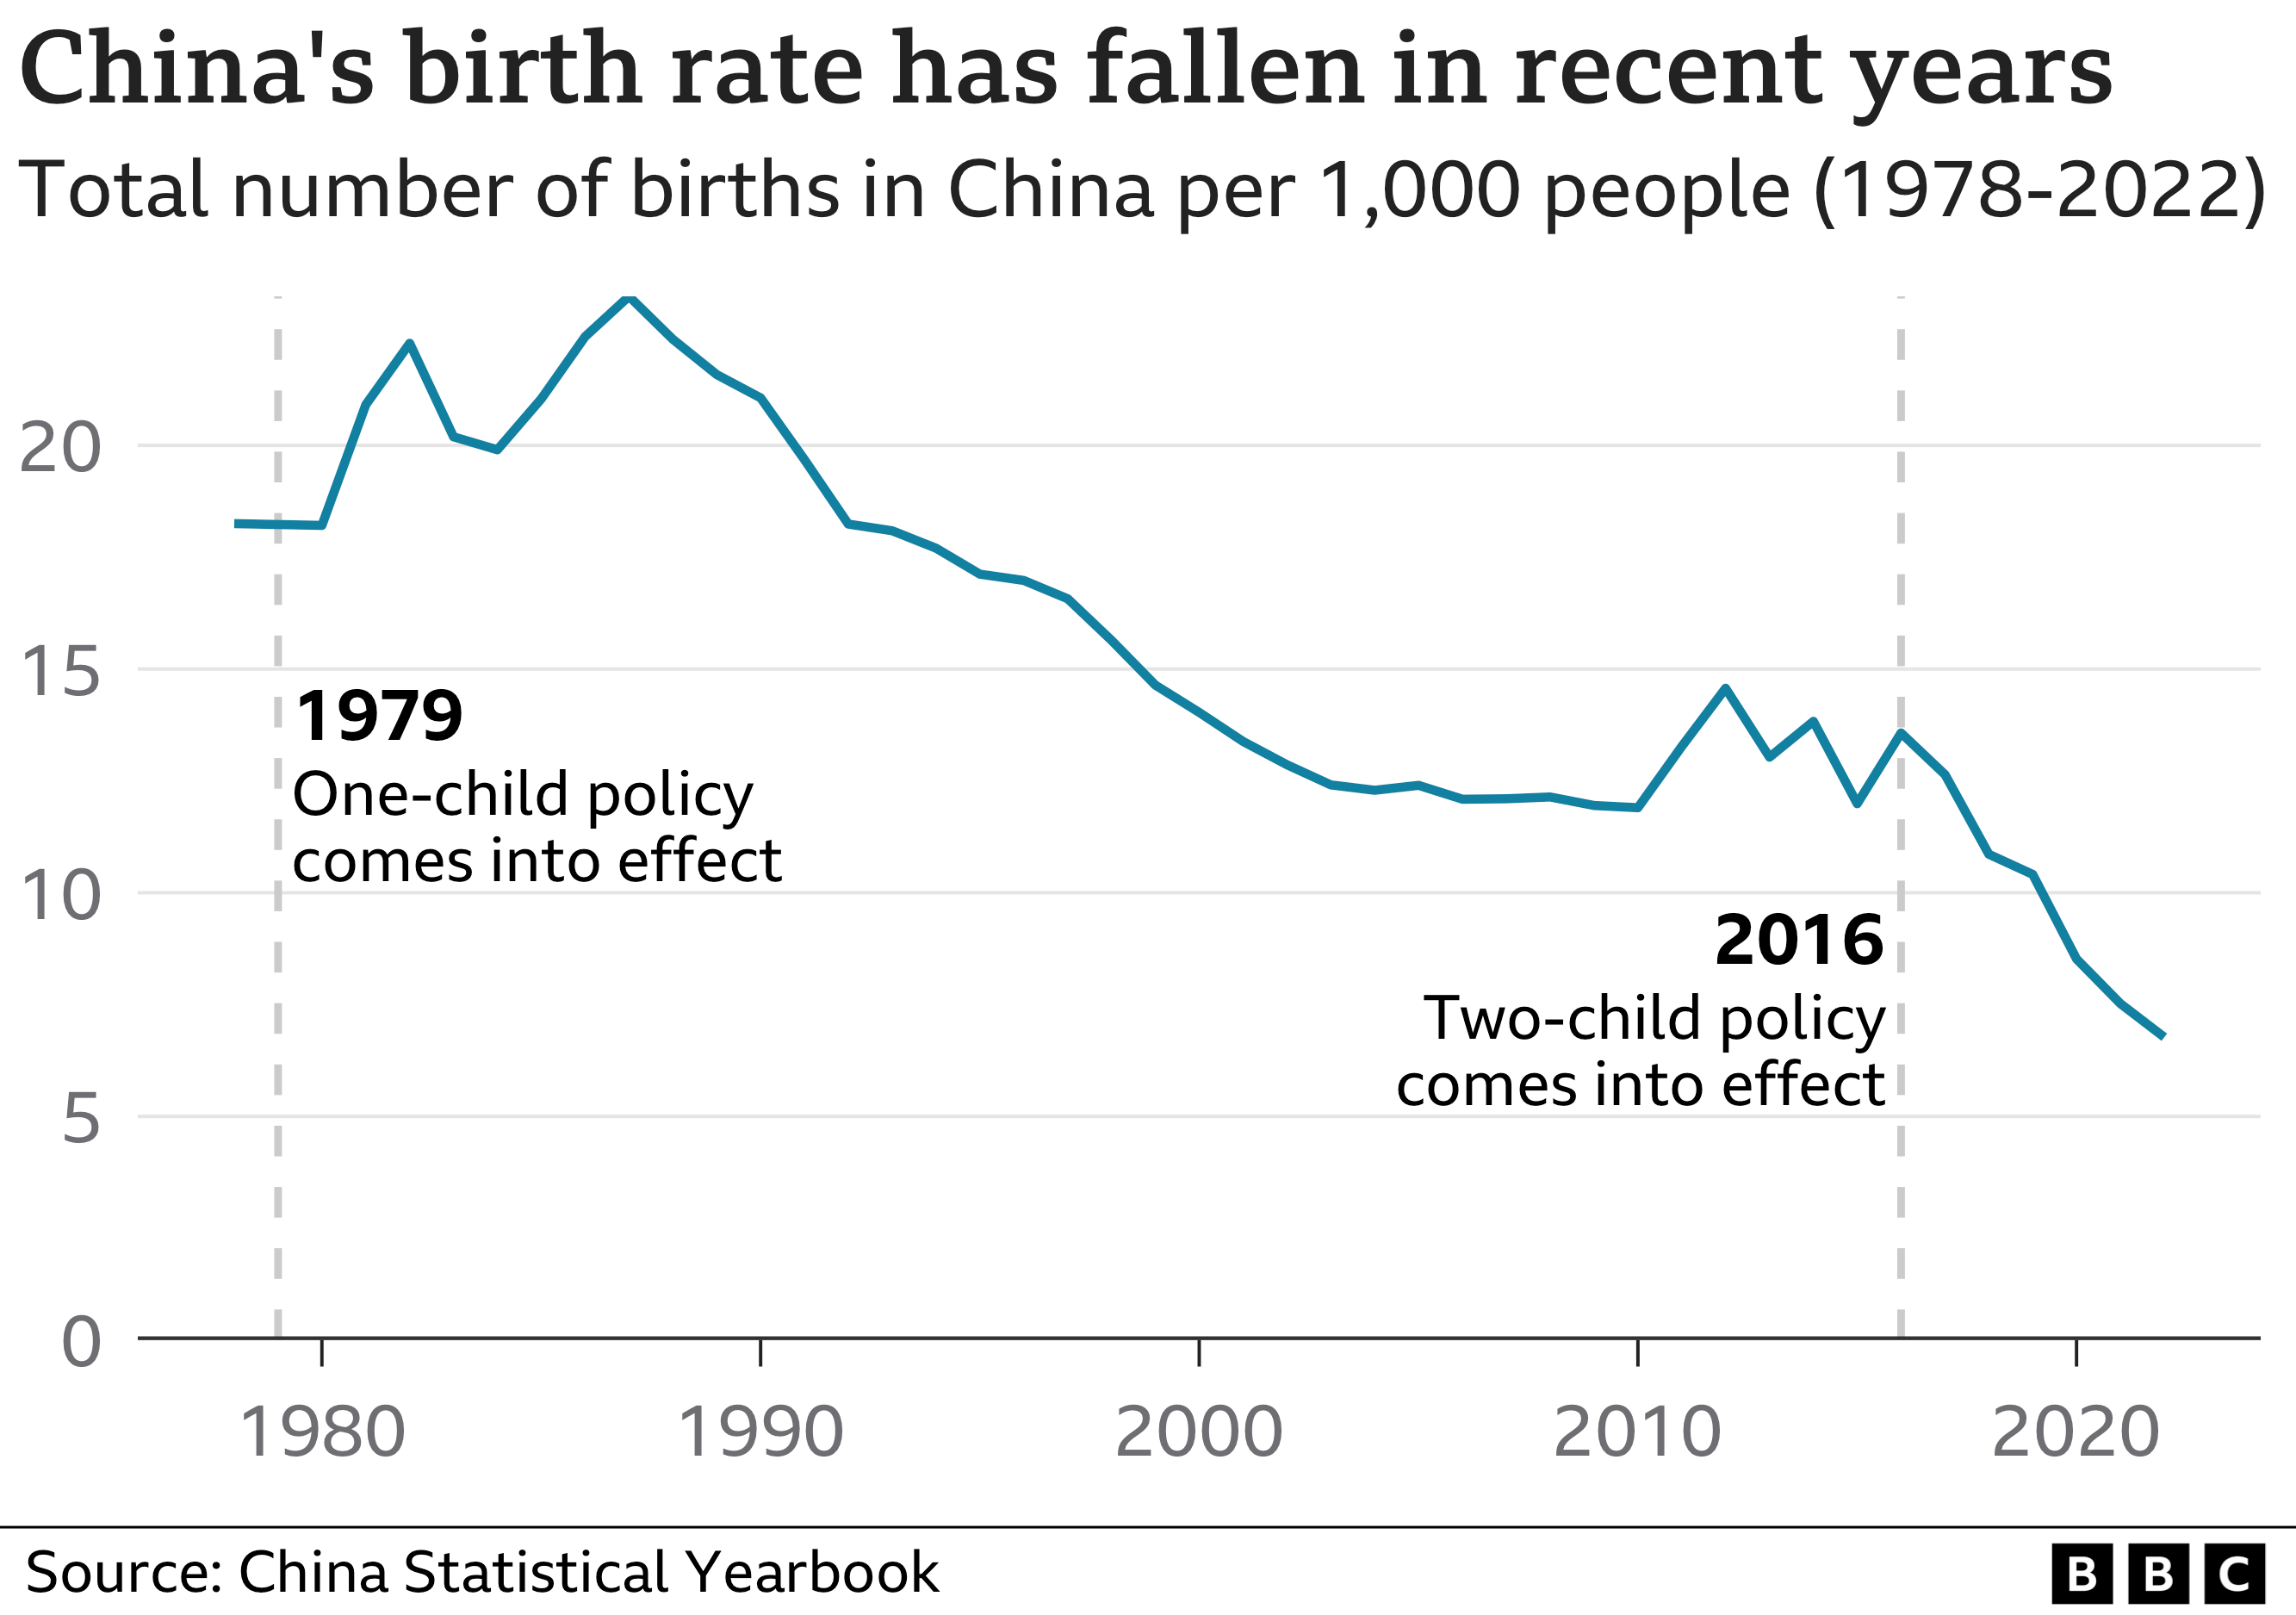 График, показывающий уровень рождаемости в Китае на 1000 человек с 1978 по 2022 год. В последние годы наблюдается устойчивое снижение. В 1978 году этот показатель составлял 18,25, а в 2022 году — 6,77.